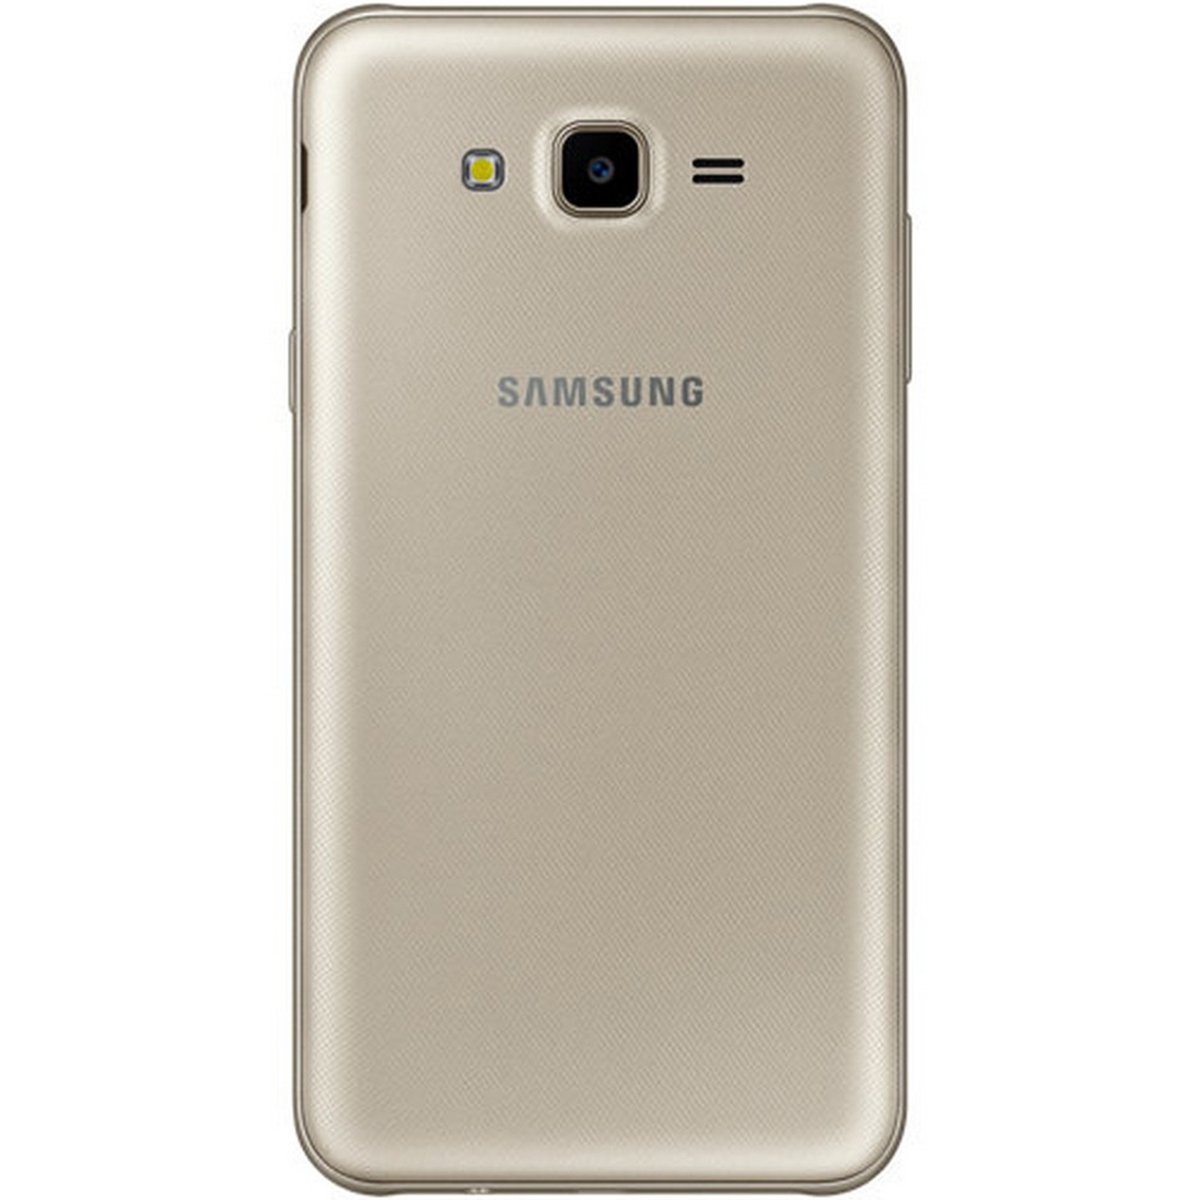 Samsung GalaxyJ7 SM-J701 32GB Gold